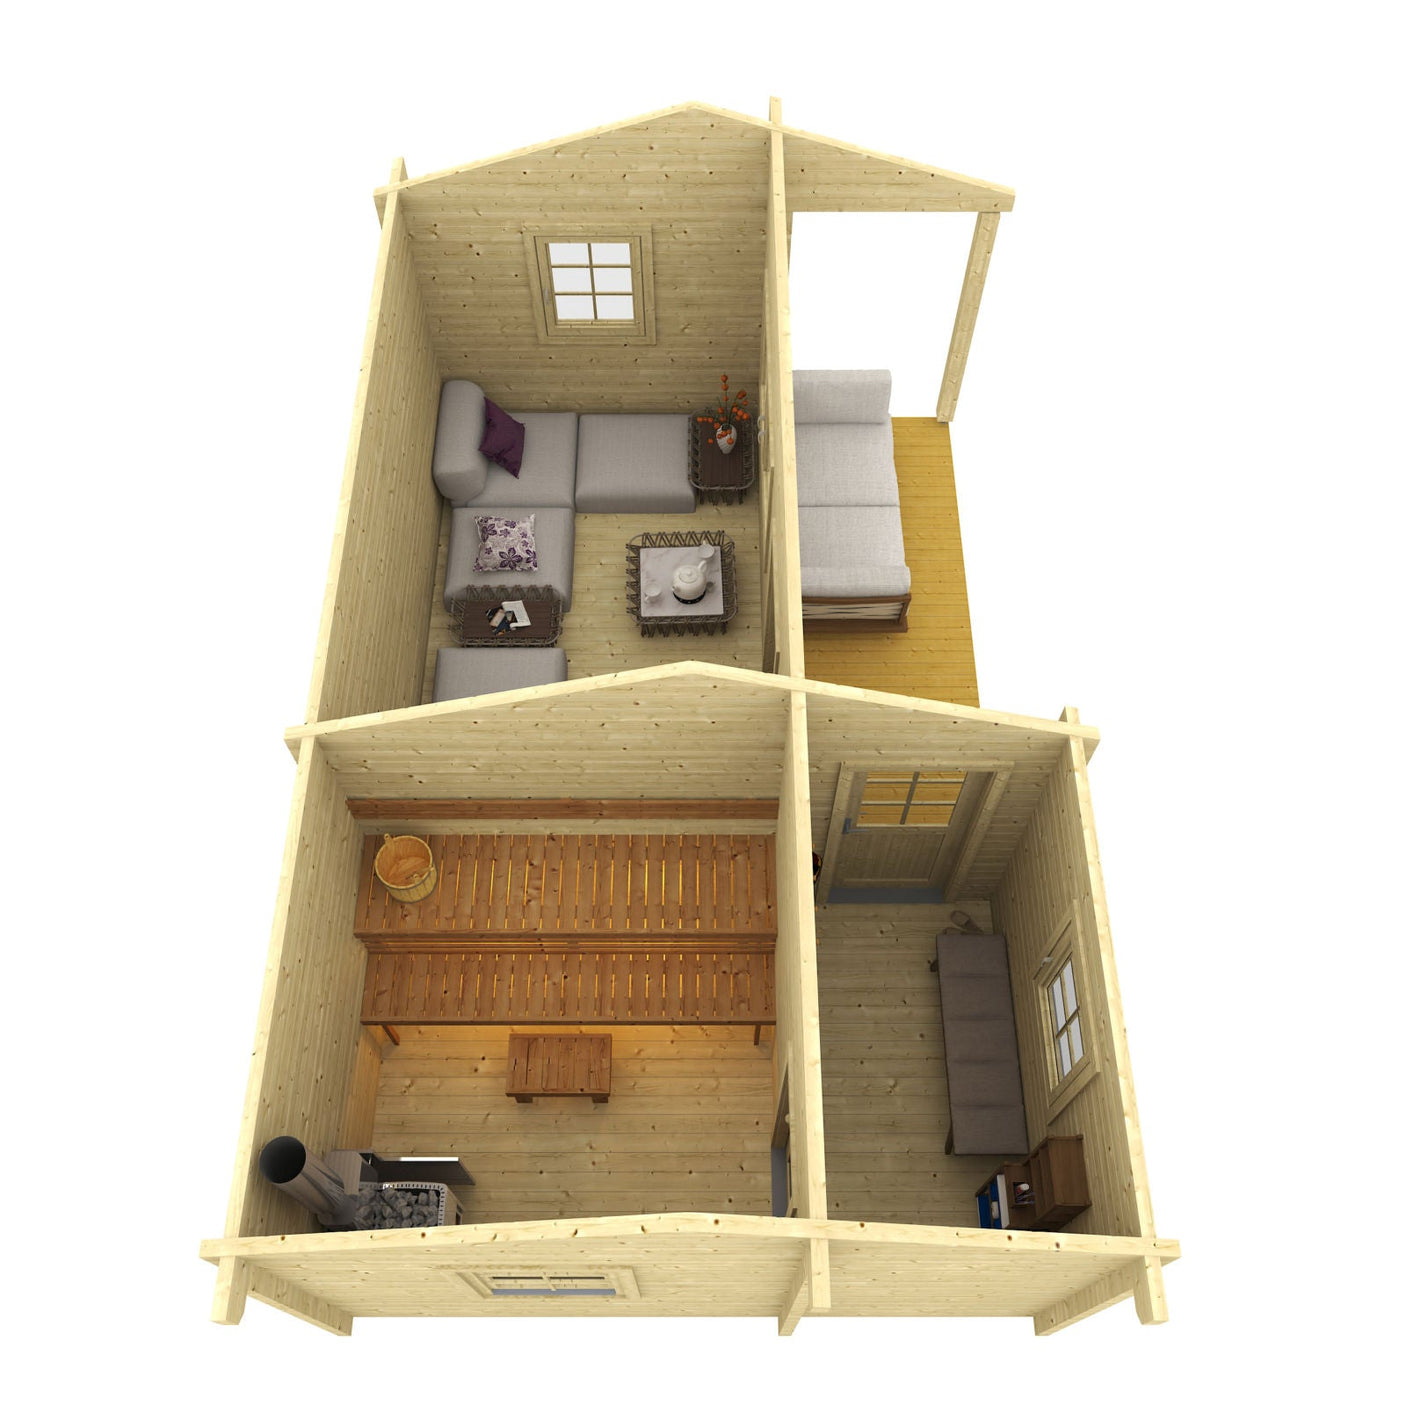 RISTO 4.2x6.7m Sauna Log Cabin Internal